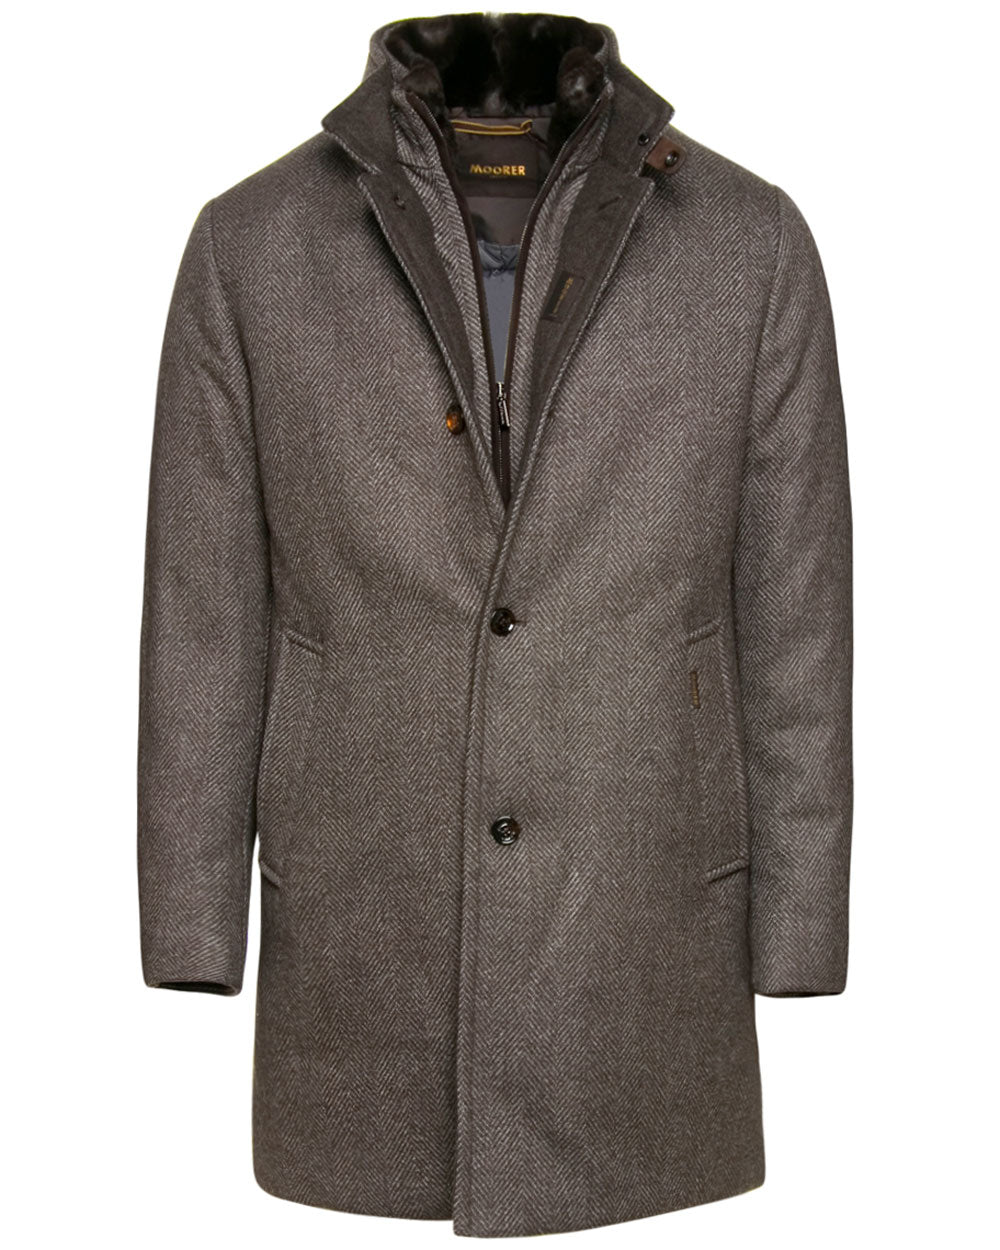 Brown Fur Lined Bond Jacket